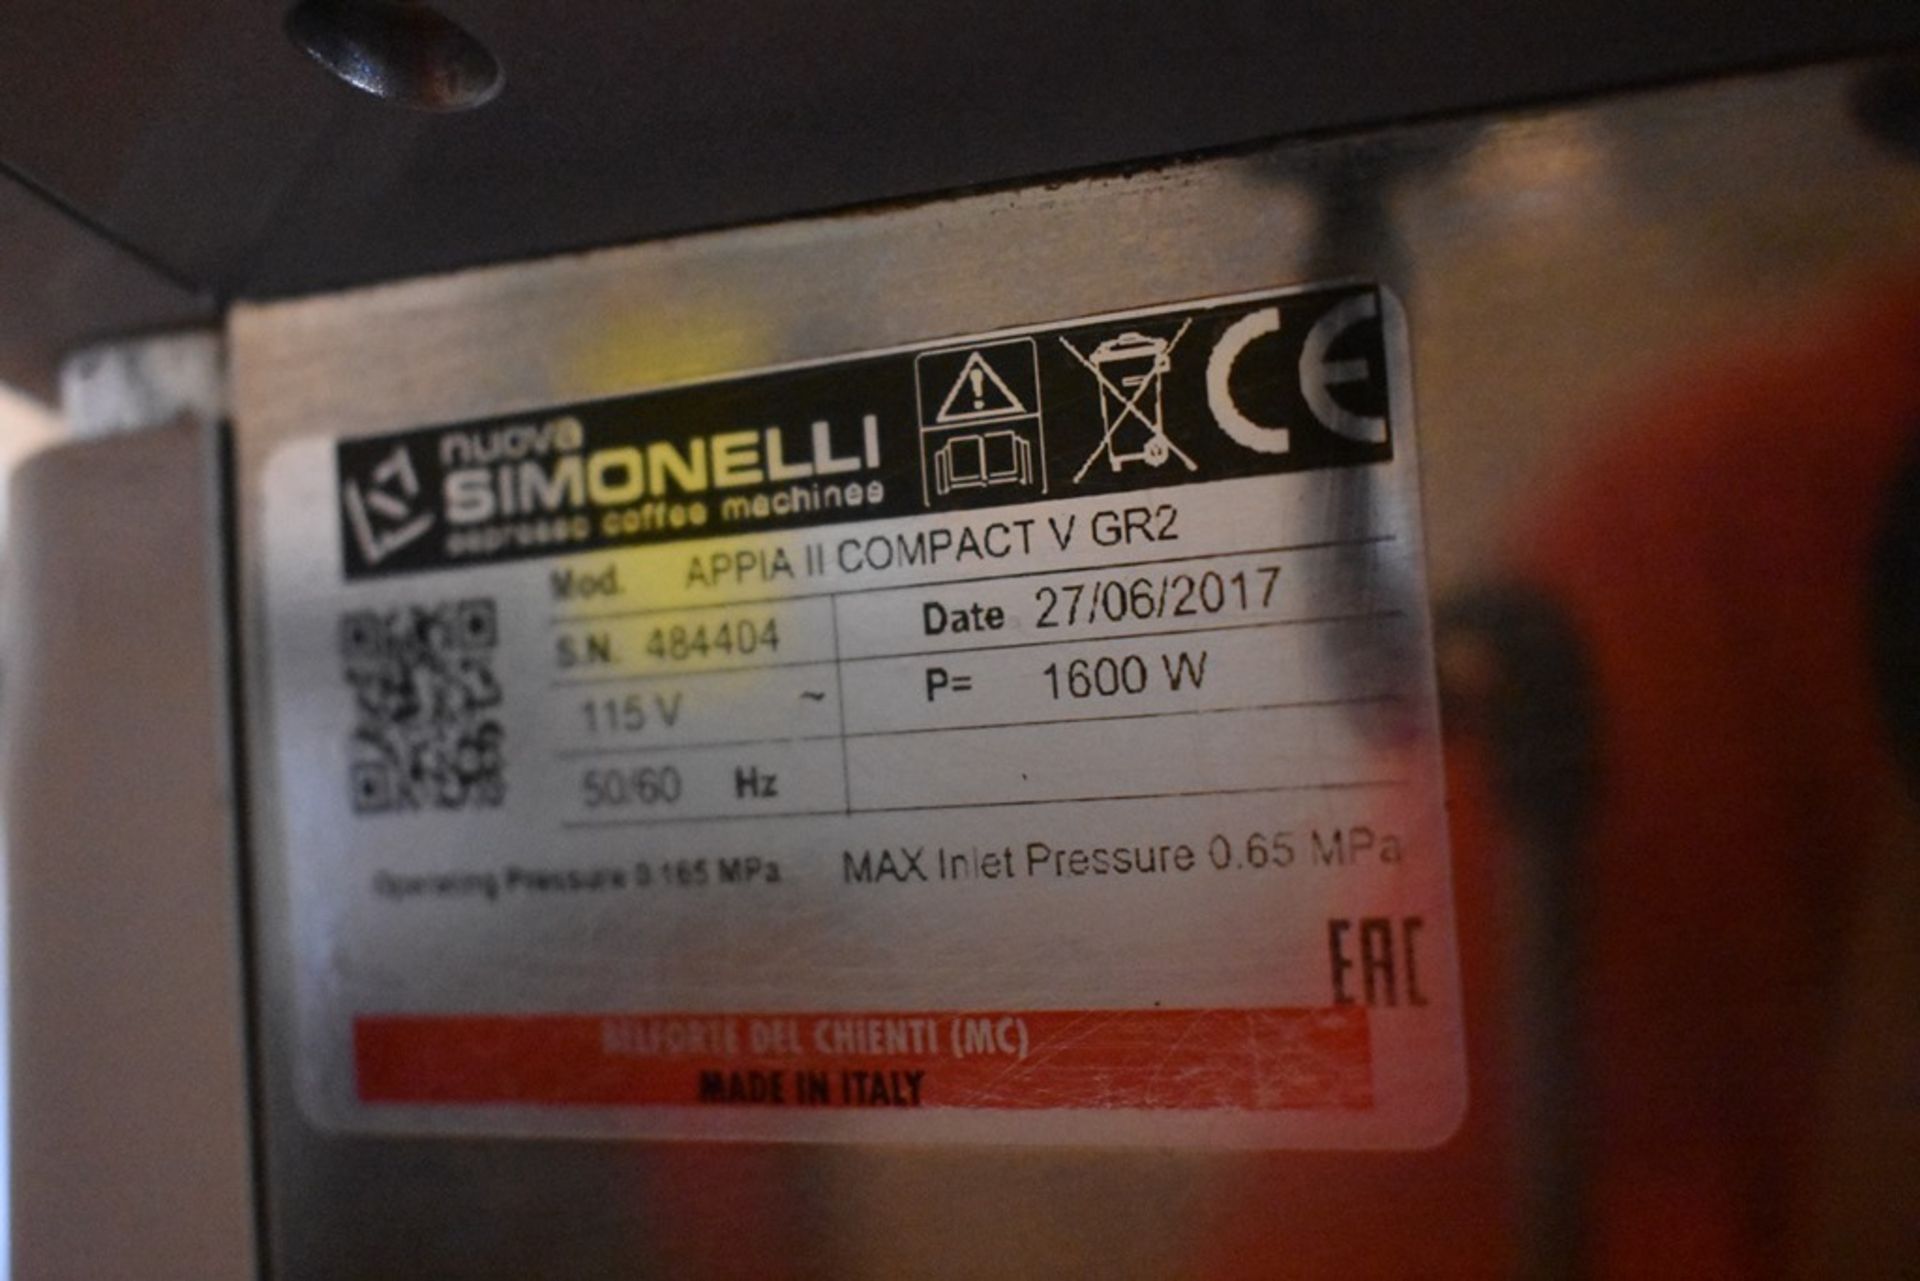 Máquina de café esspreso automática de dos grupos marca Simonelli - Image 9 of 10